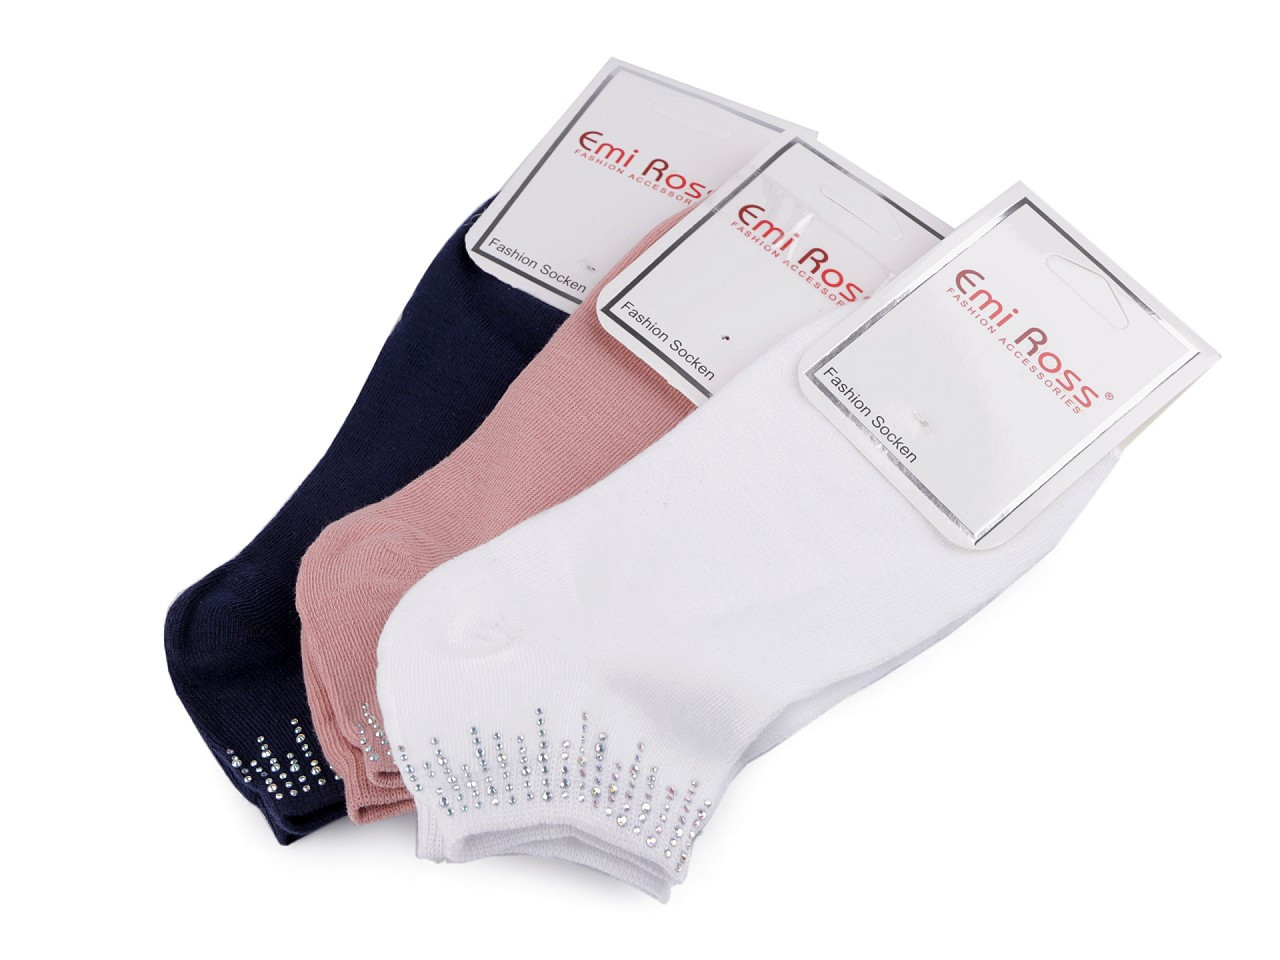 Dámské bavlněné ponožky kotníkové s kamínky Emi Ross, barva 30 (vel. 39-42) mix